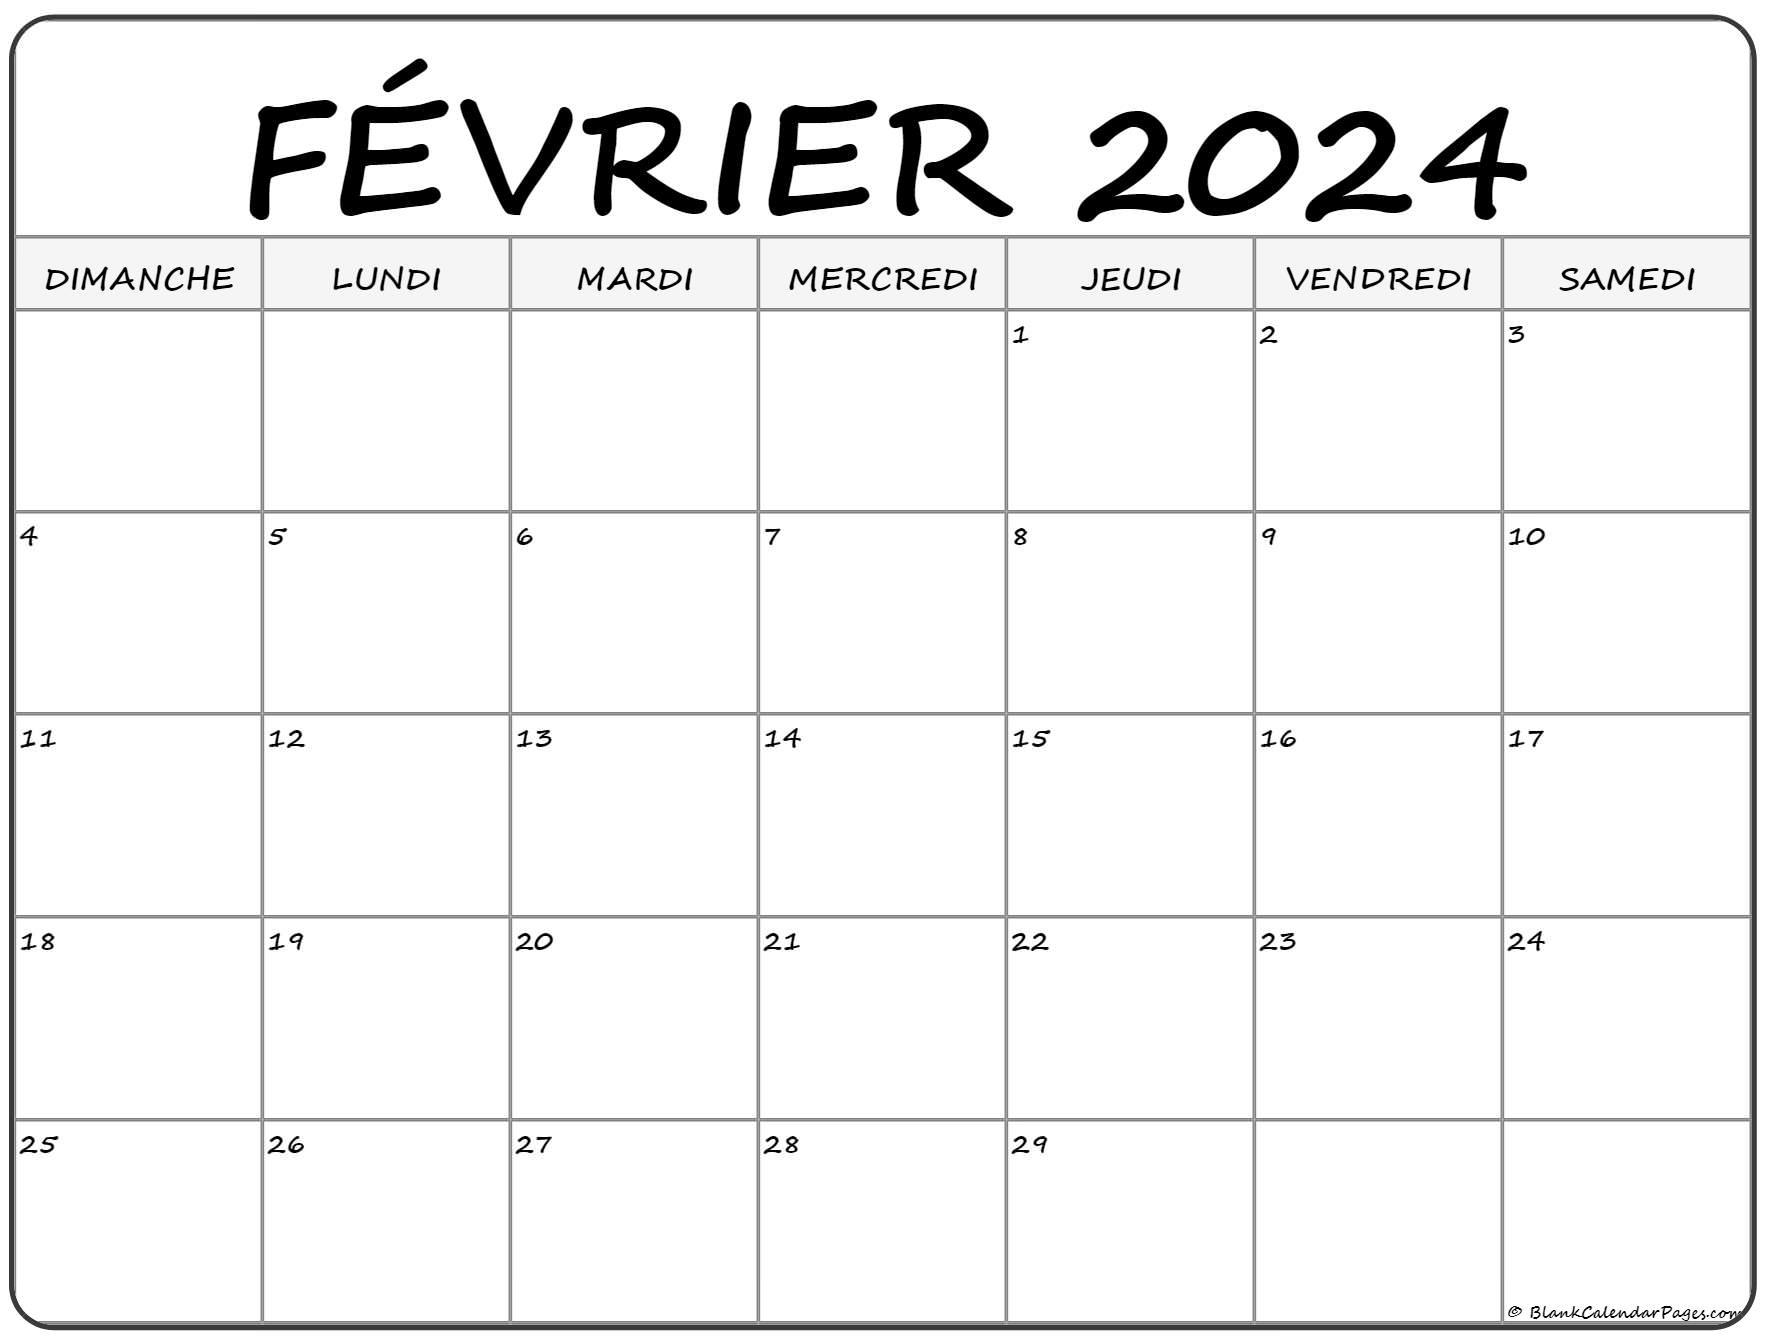 Calendrier Fevrier Mars 2022 février 2022 calendrier imprimable | Calendrier gratuit